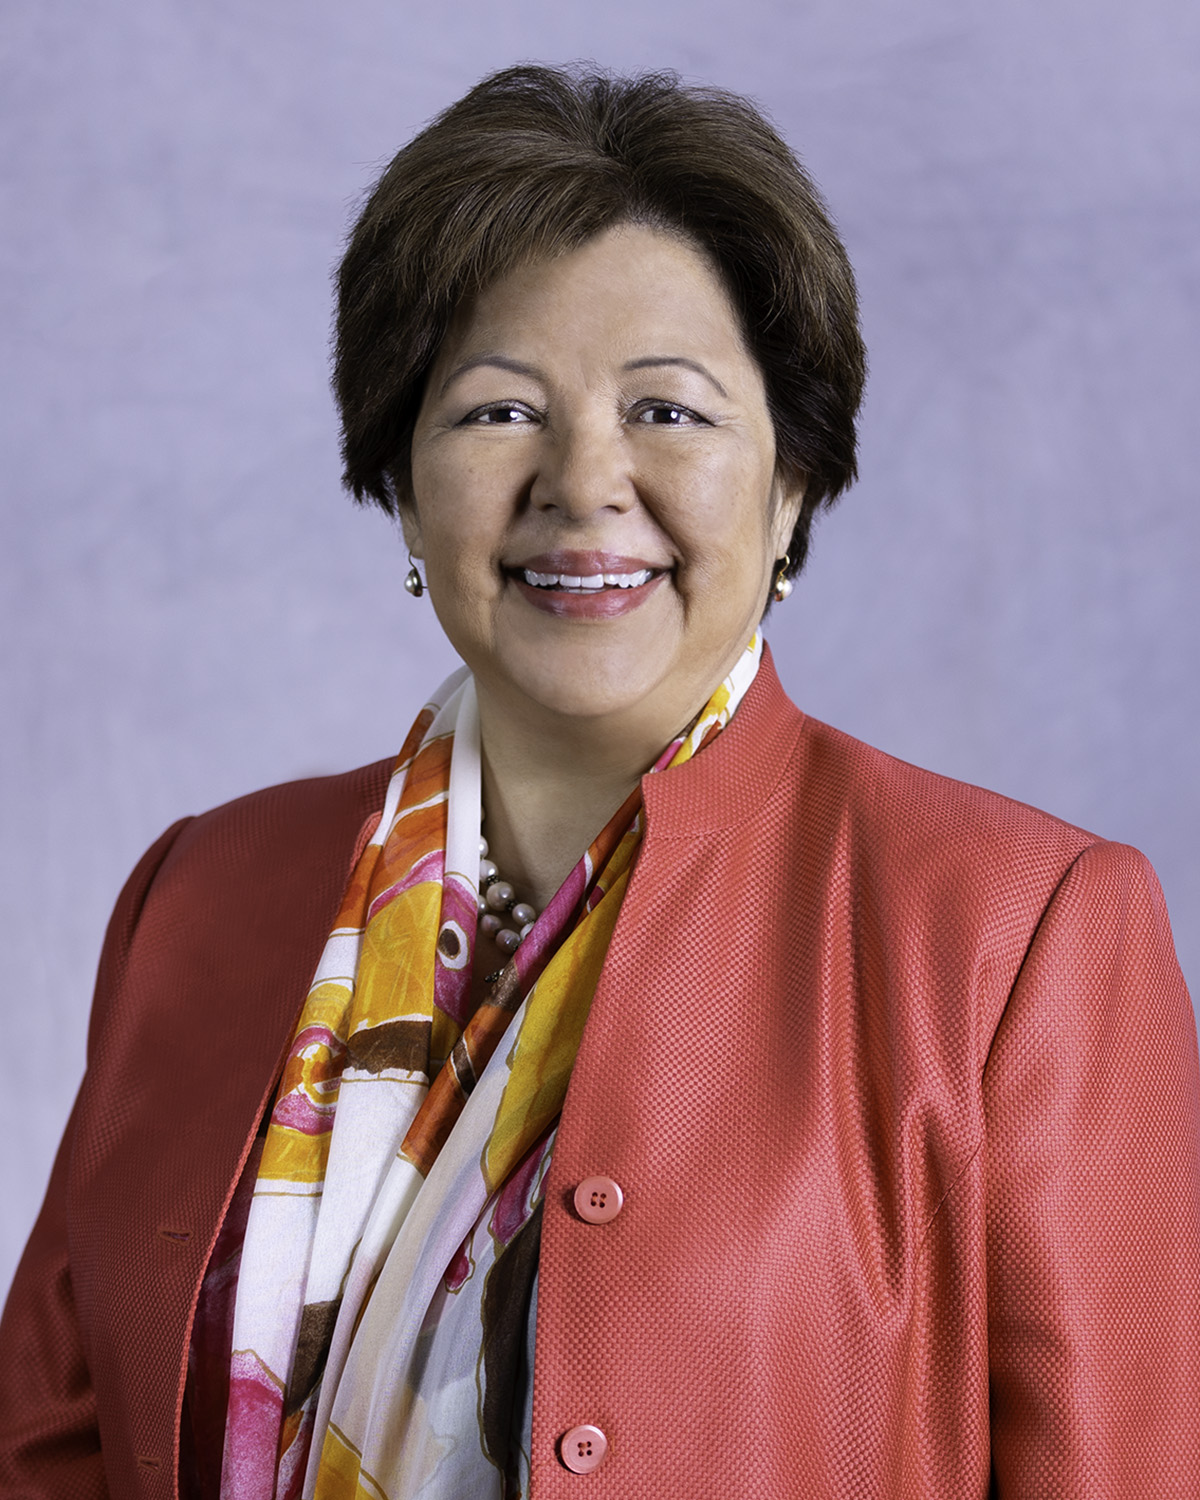 Noelia Rodriguez